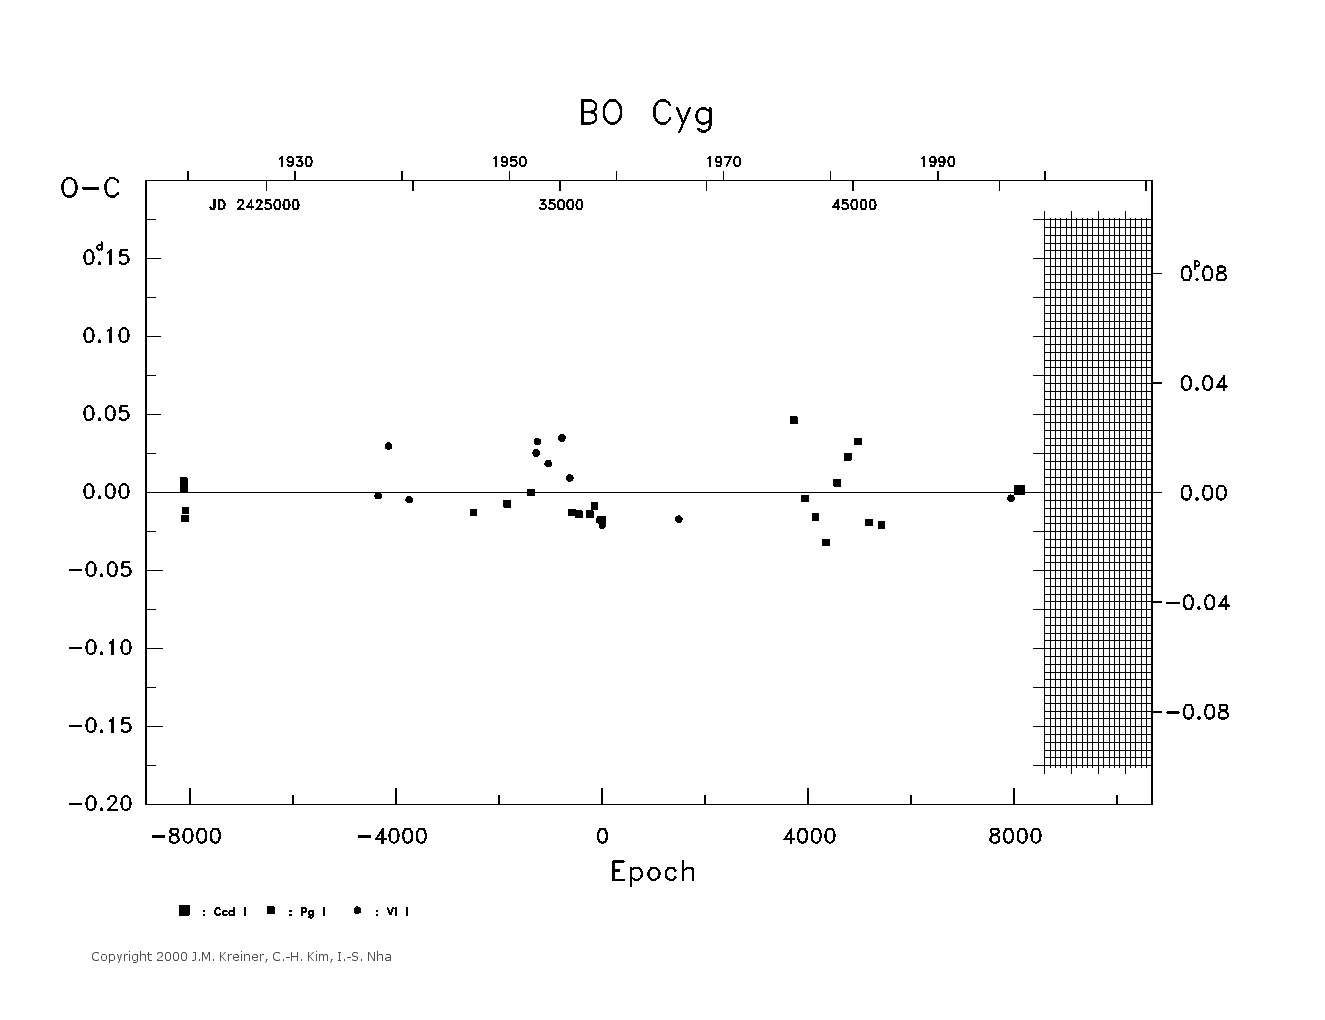 [IMAGE: large BO CYG O-C diagram]